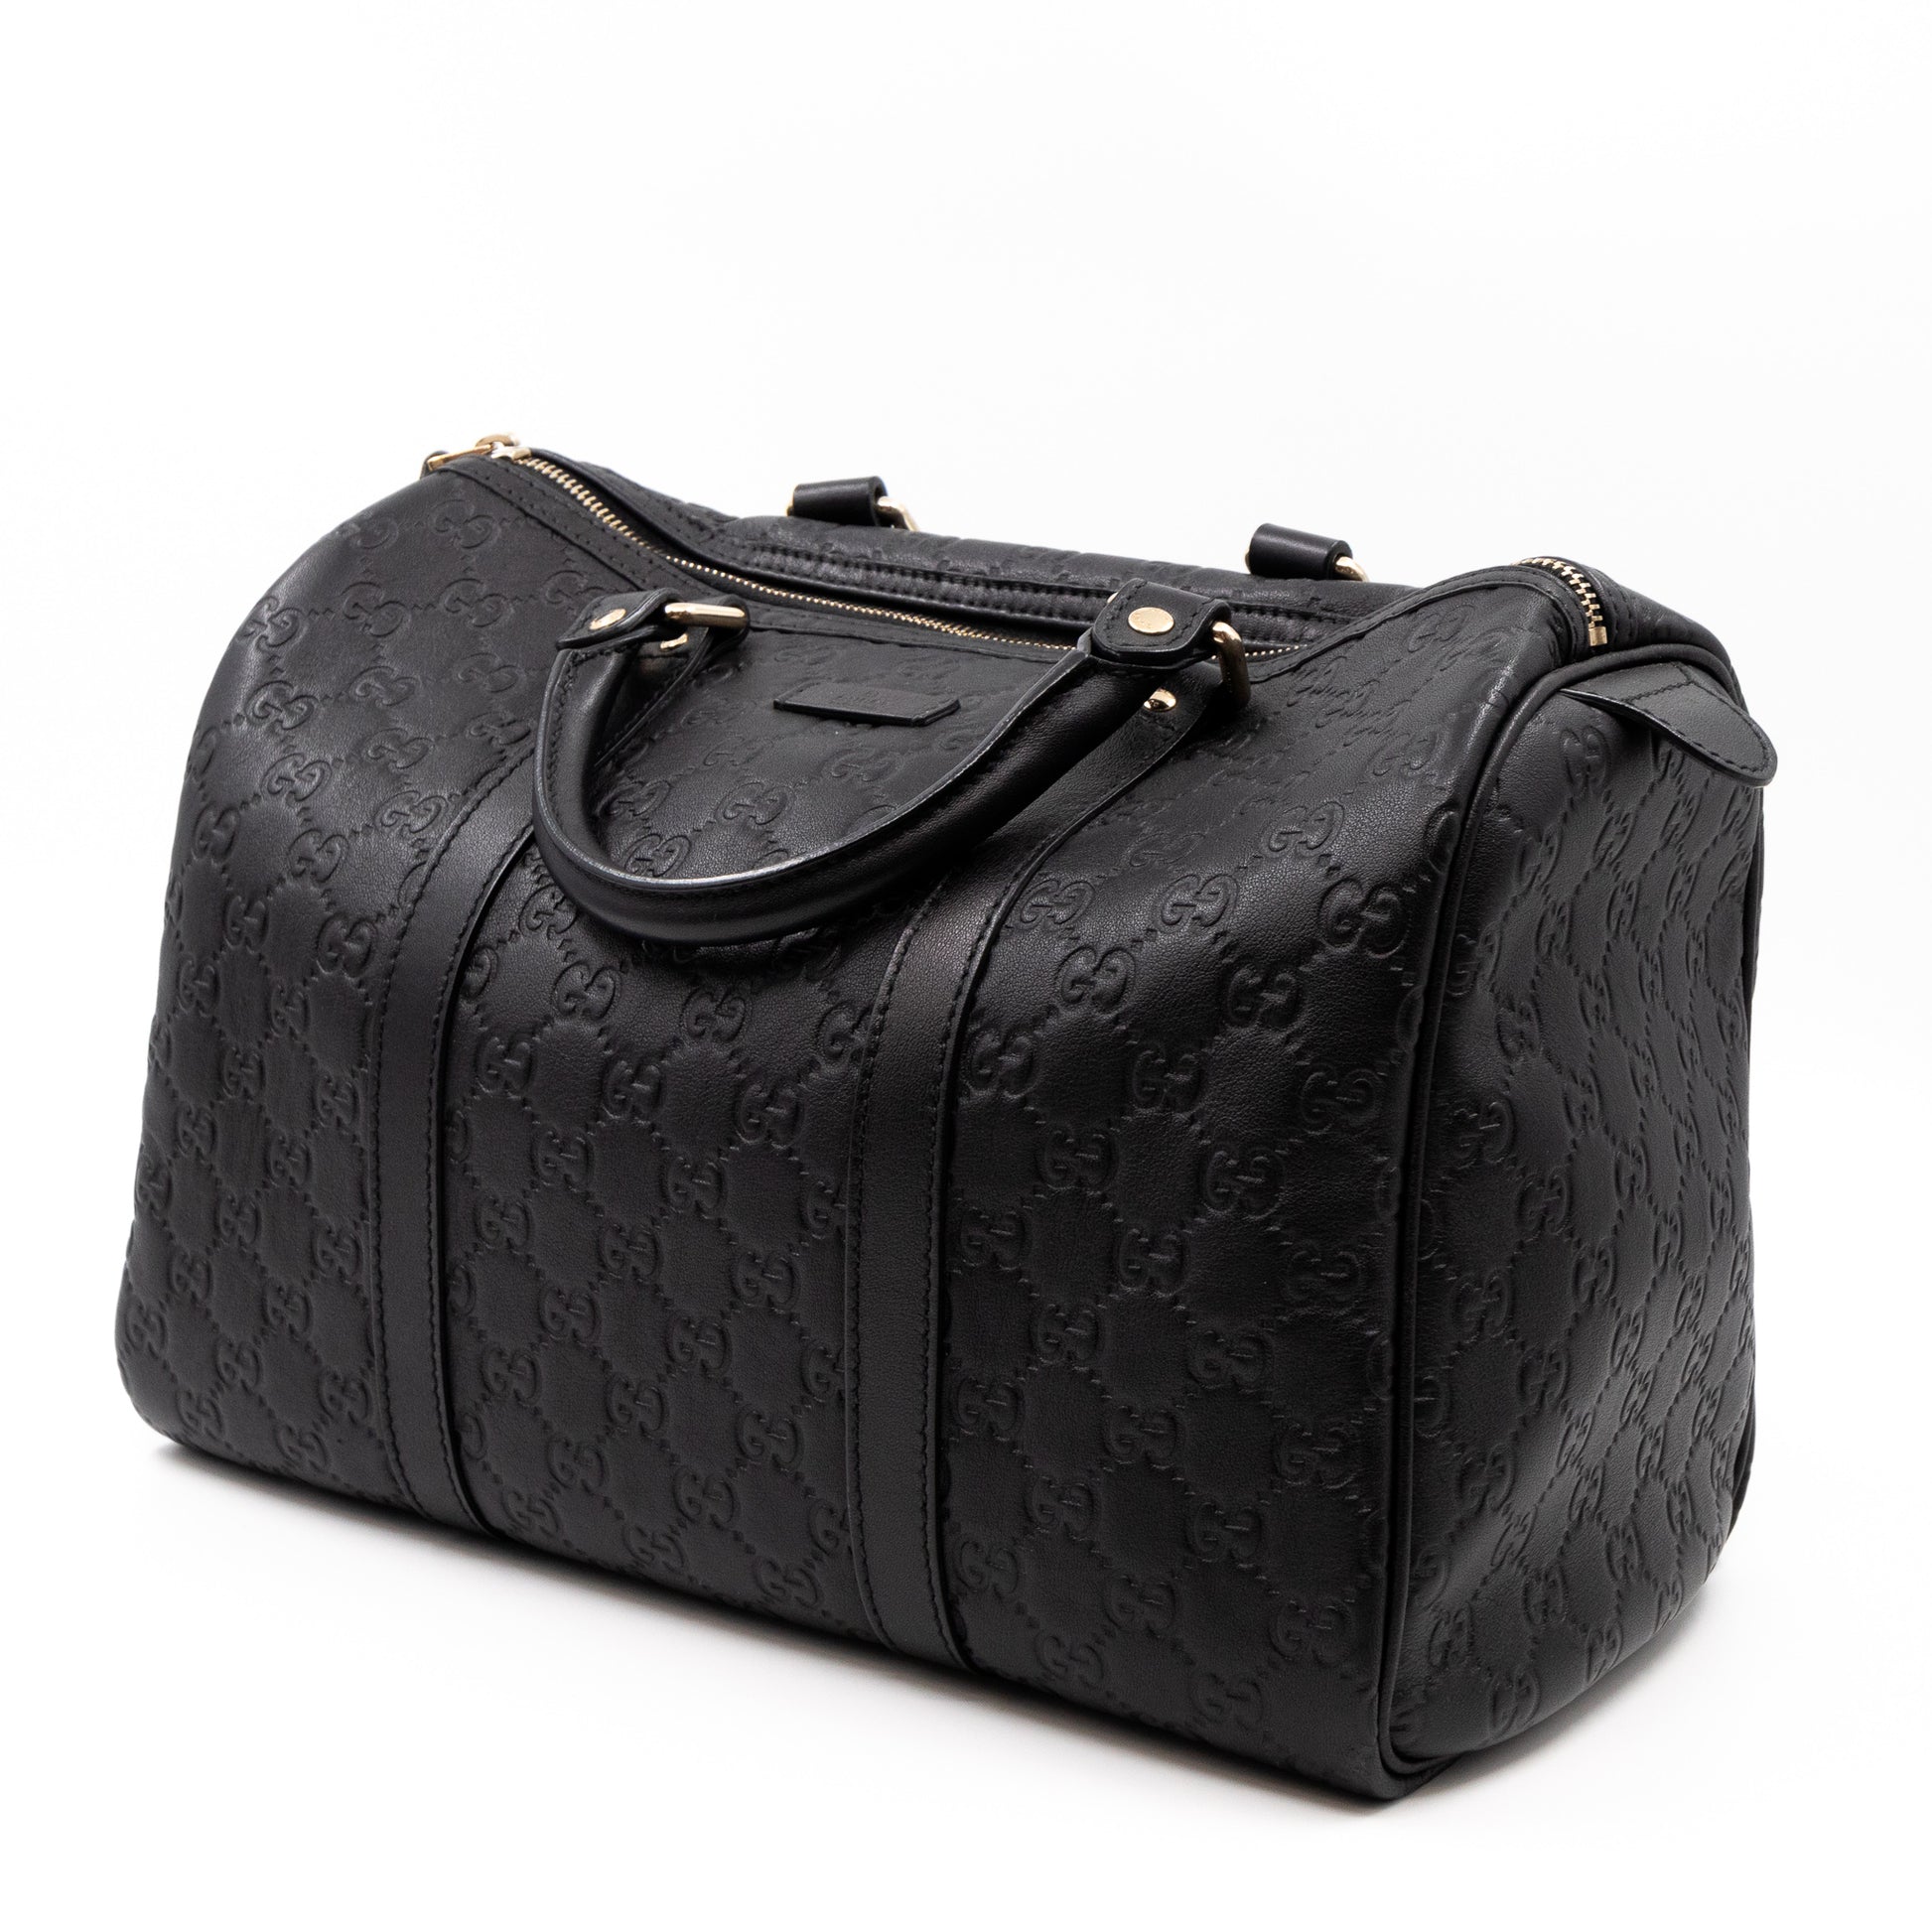 Gucci Microssima Leather Boston Bag In Black